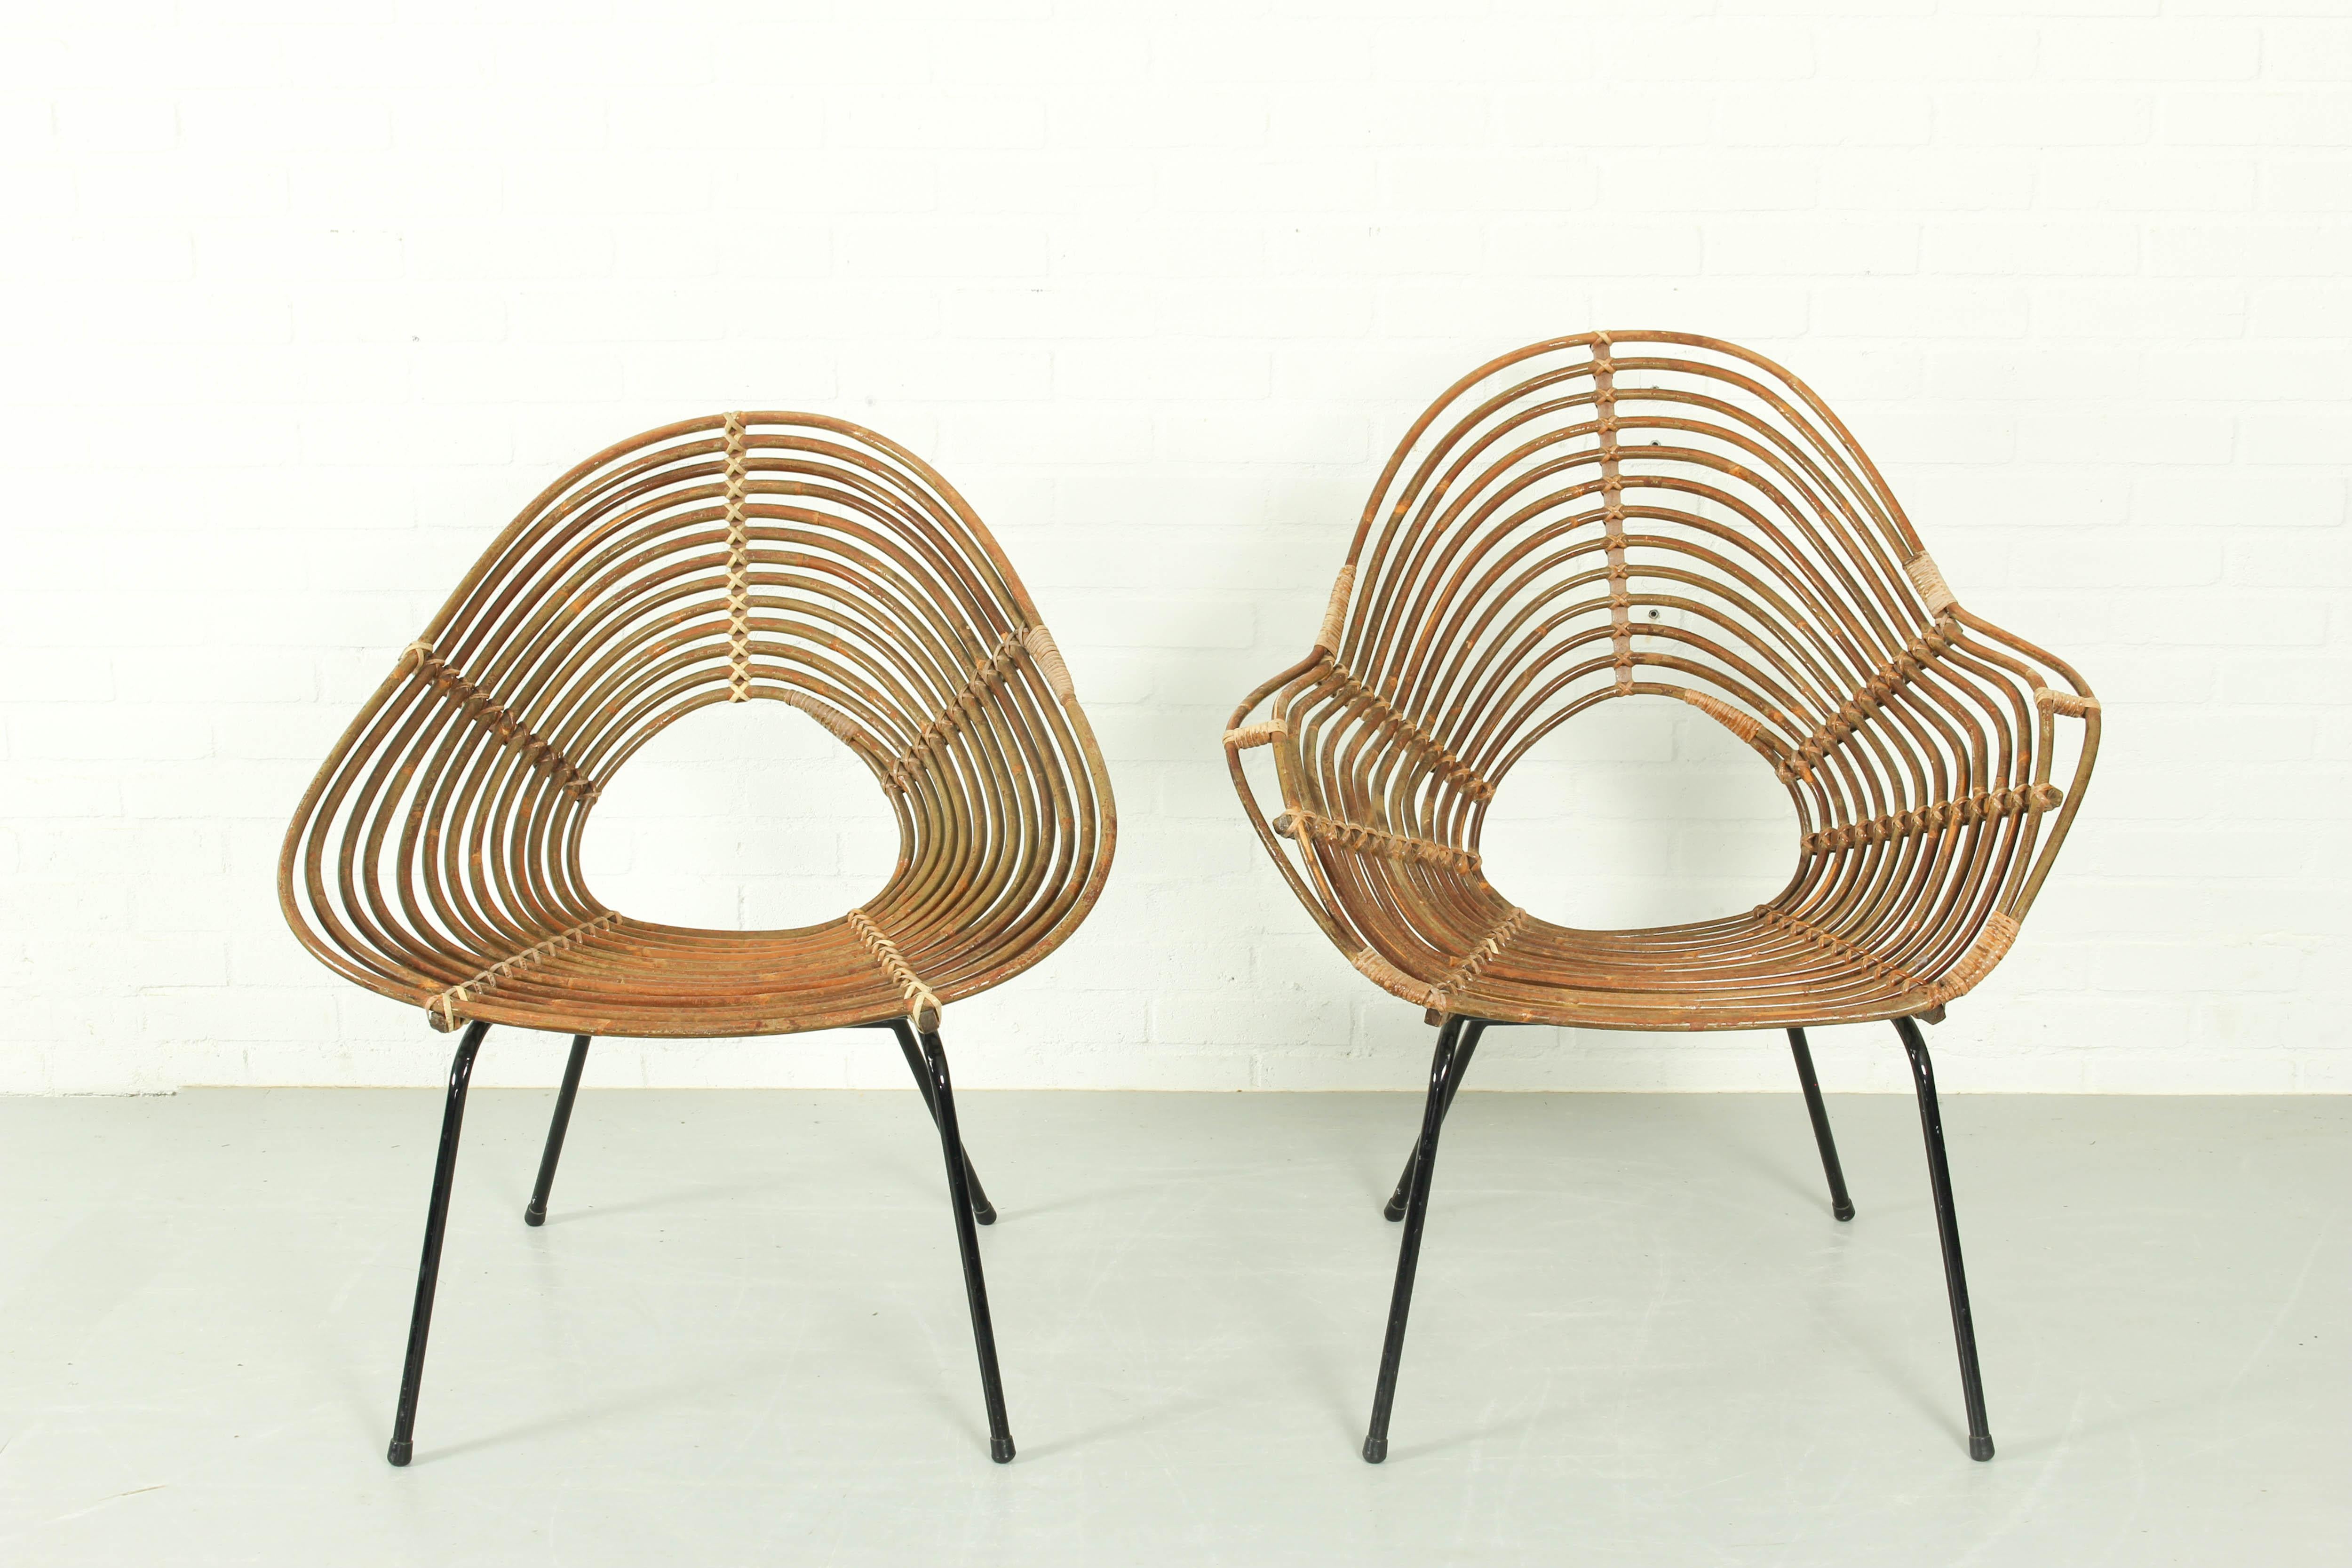 Ensemble de 2 rares chaises en rotin conçues par H. Broekhuizen pour Rohe Noordwolde dans les années 1960. Bien que ces chaises en rotin paraissent simples, leur fabrication nécessite un véritable savoir-faire. À Noordwolde, on travaille le rotin